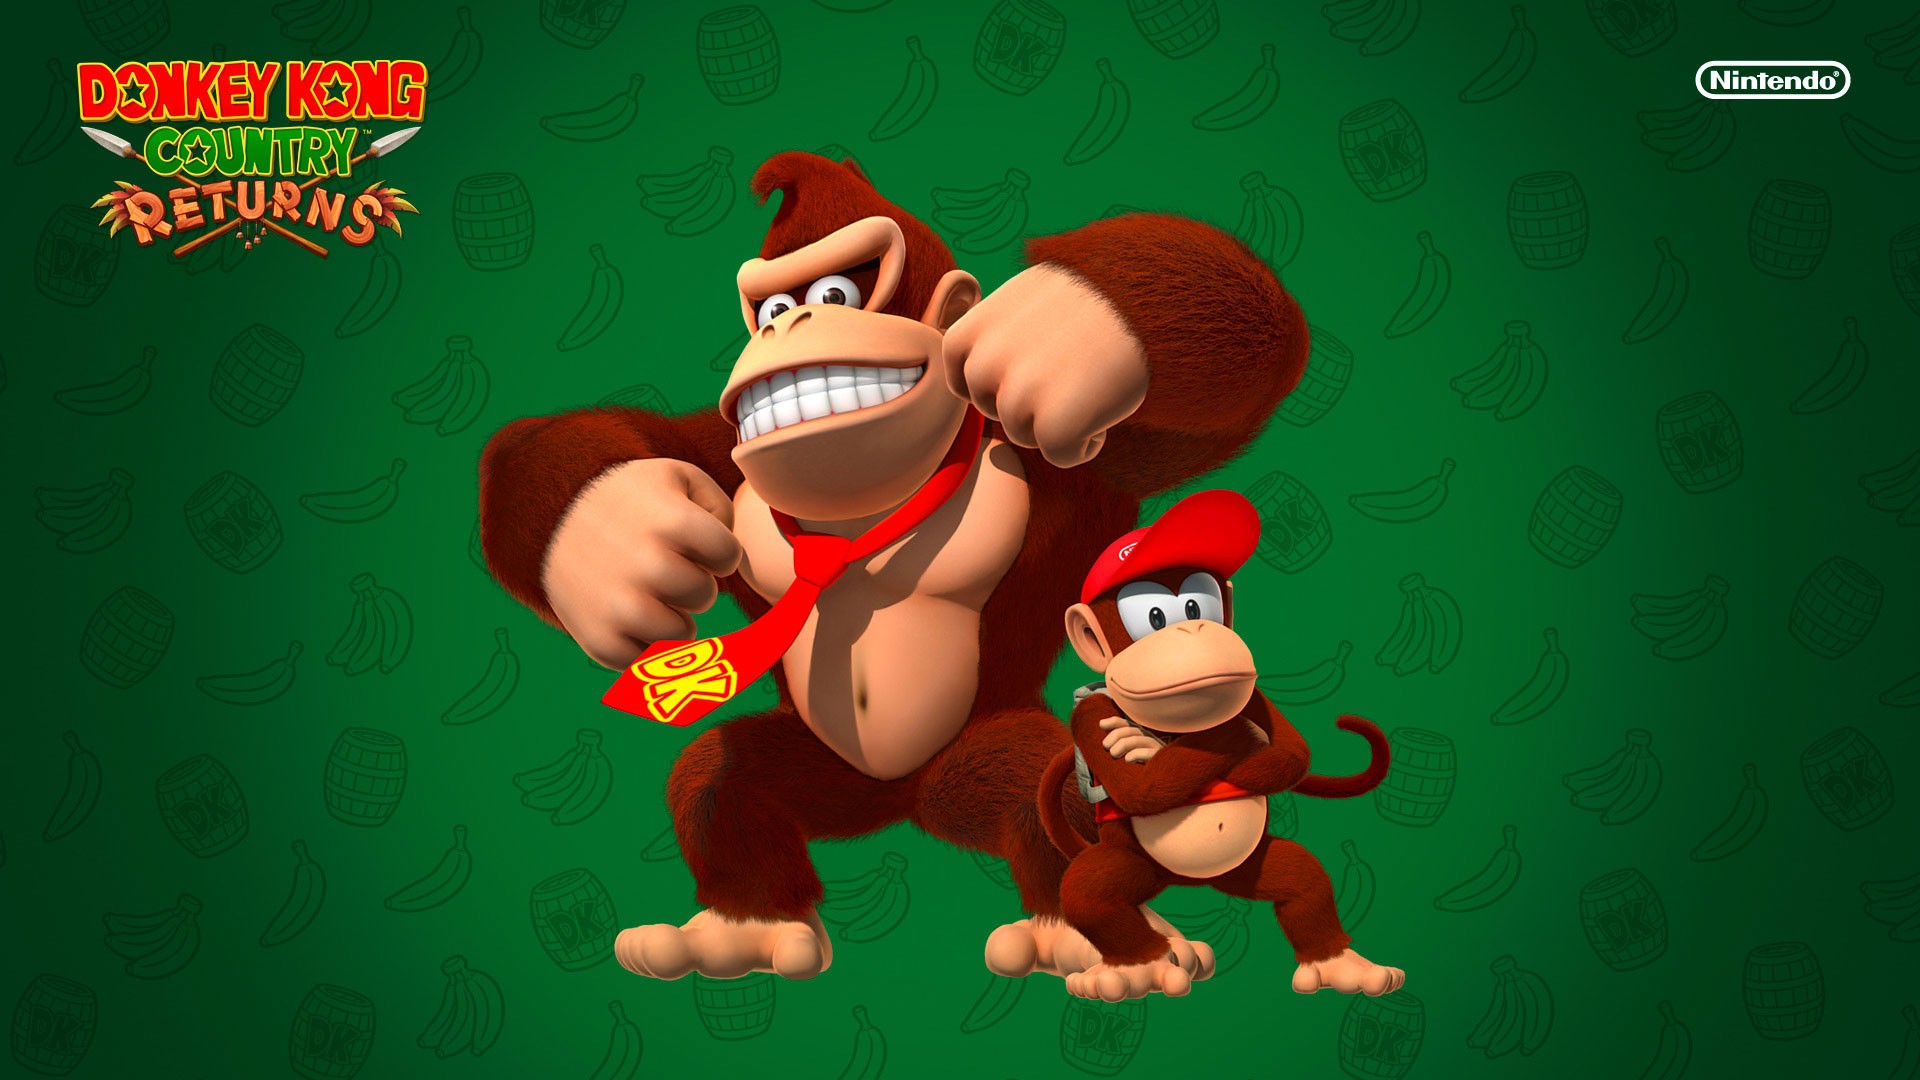 Diddy Kong Donkey Kong 1920x1080